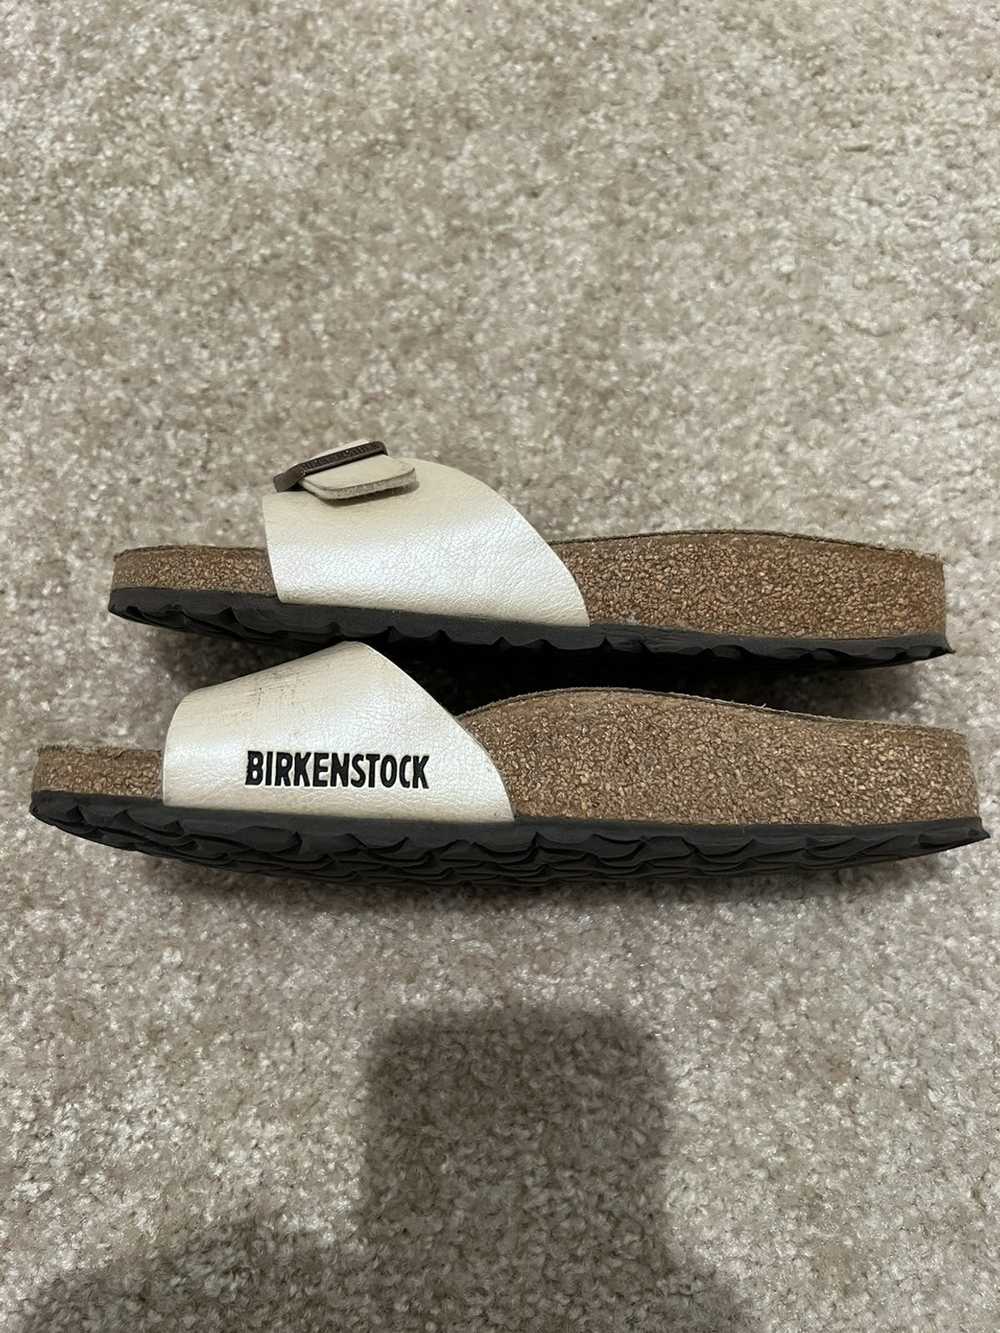 Birkenstock Birkenstock Madrid sandal, beige/crem… - image 4